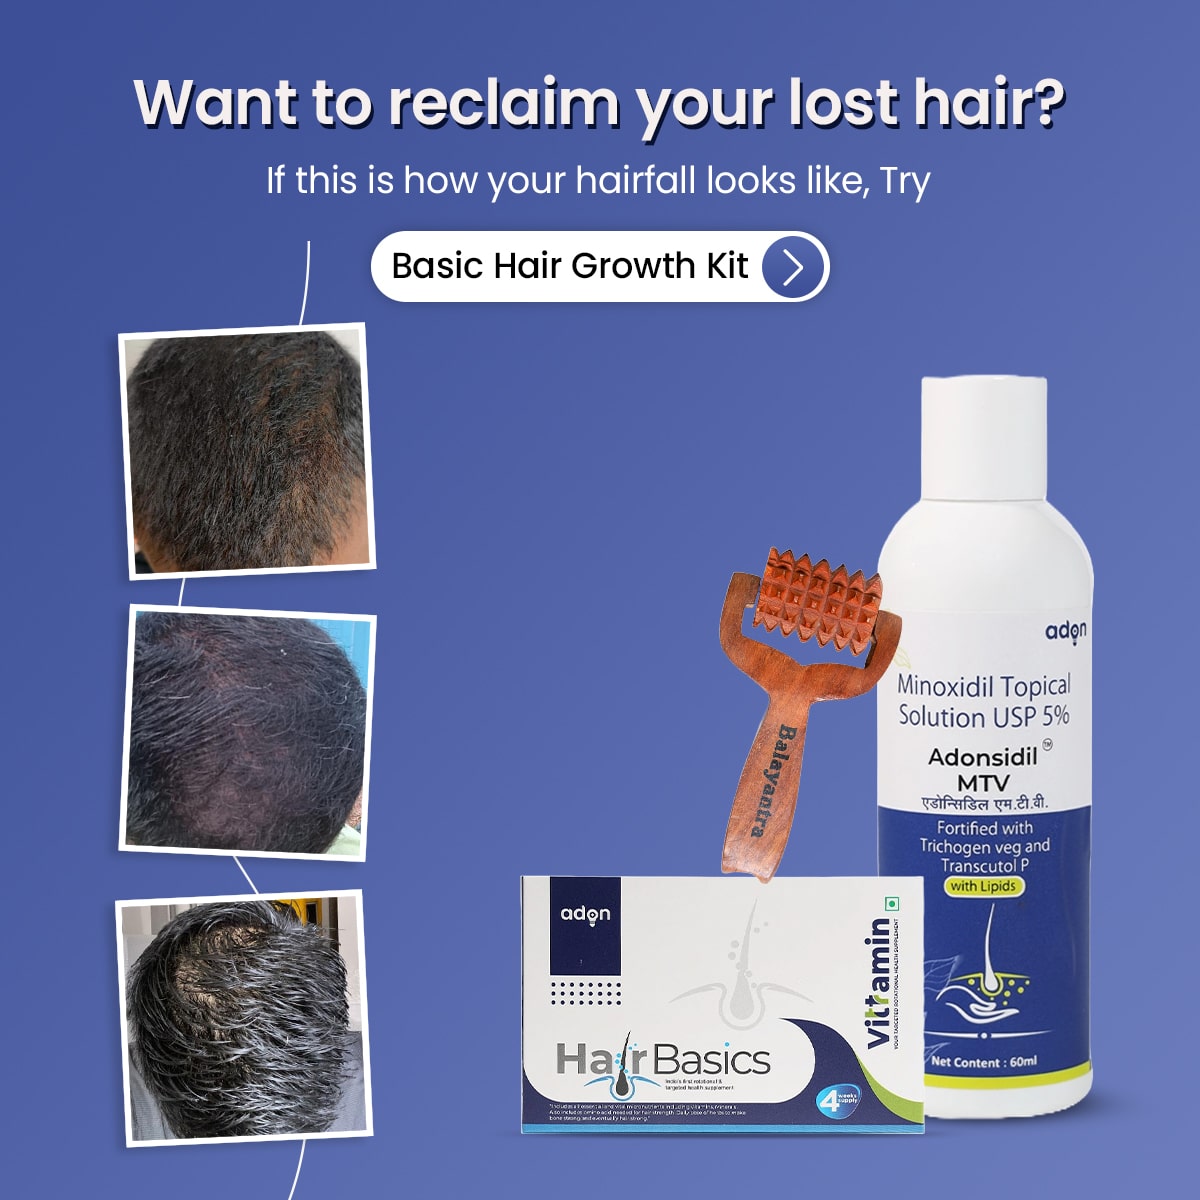 Basic Hair Growth Kit